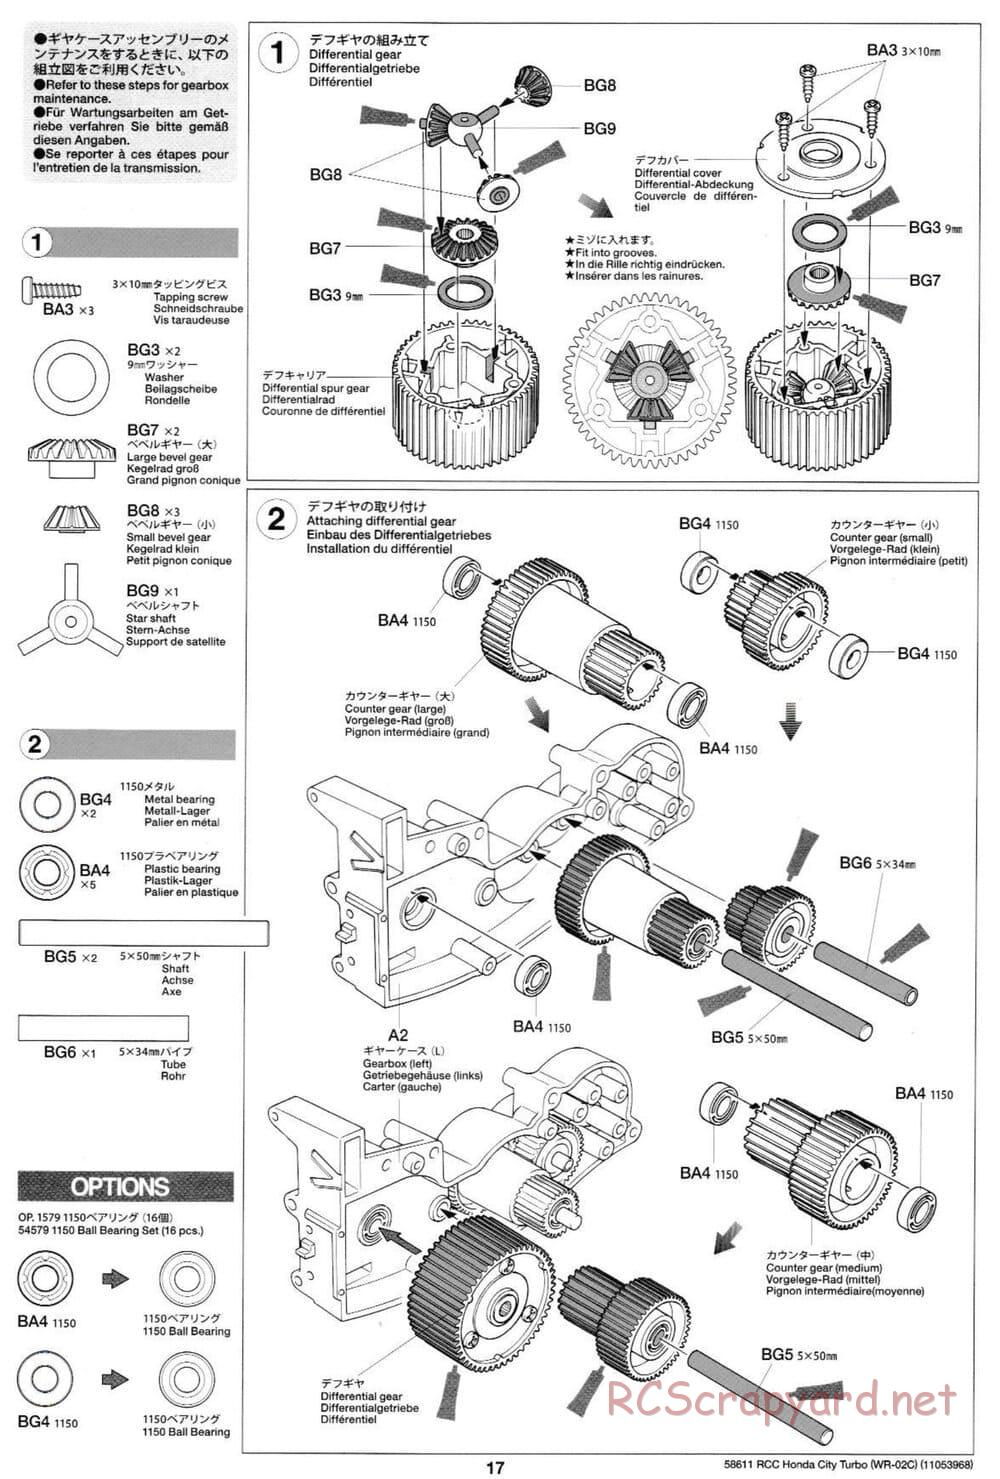 Tamiya - Honda City Turbo - WR-02C Chassis - Manual - Page 17